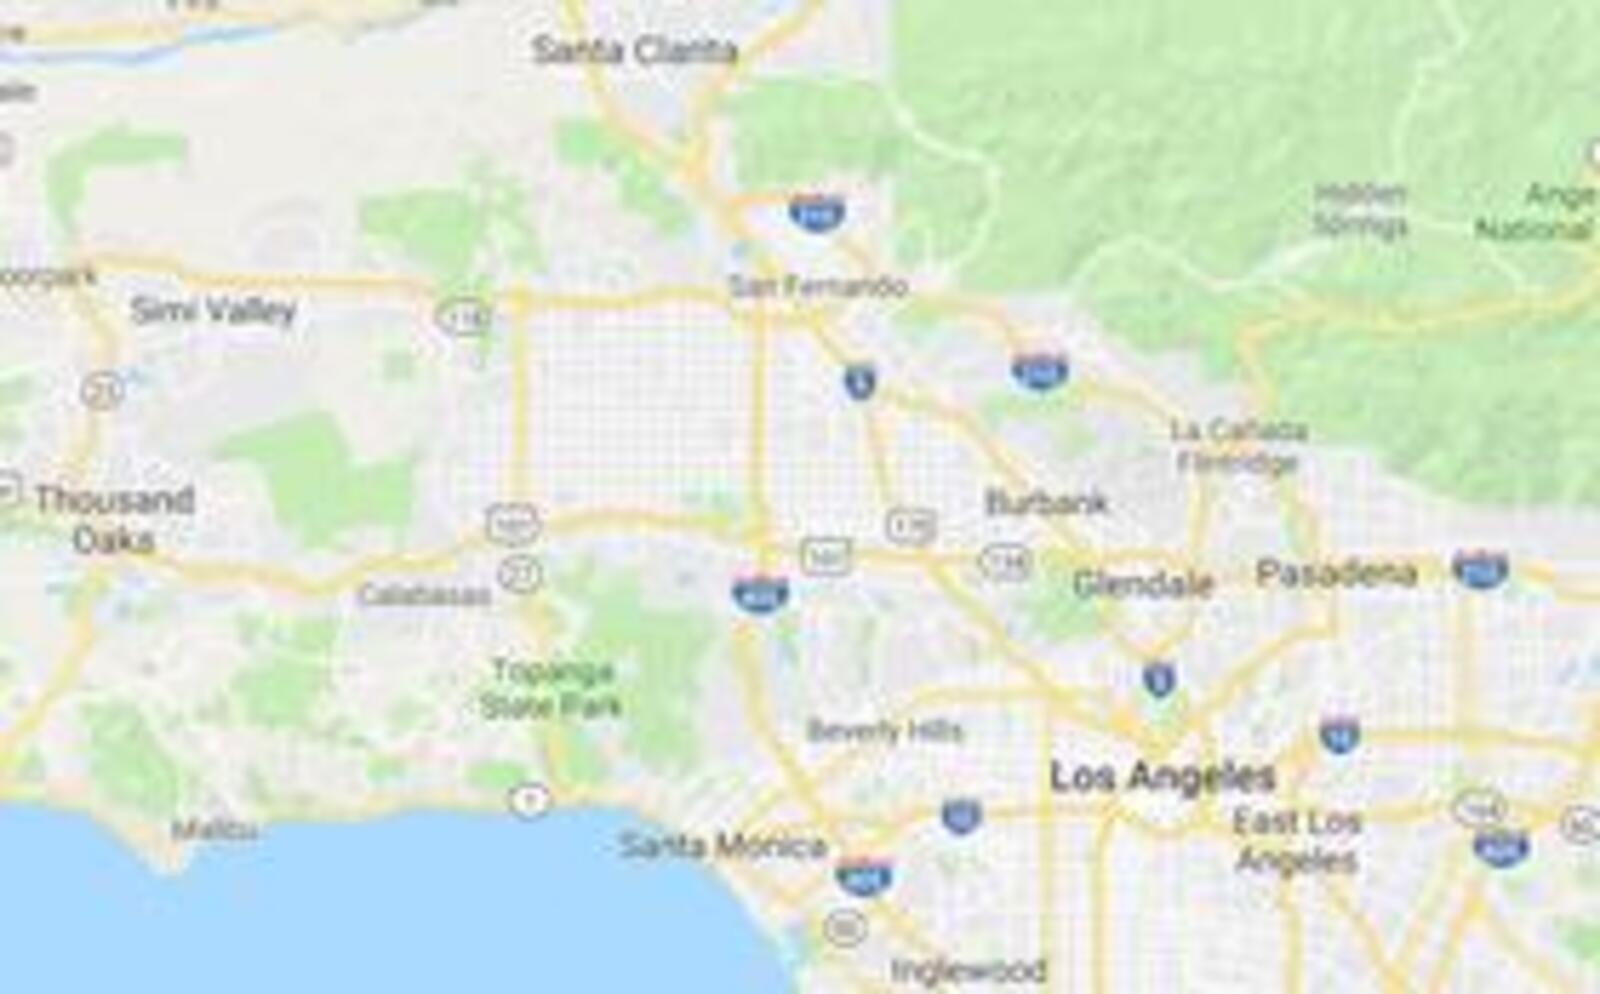 Los Angeles, San Fernando Valley, and Ventura areas